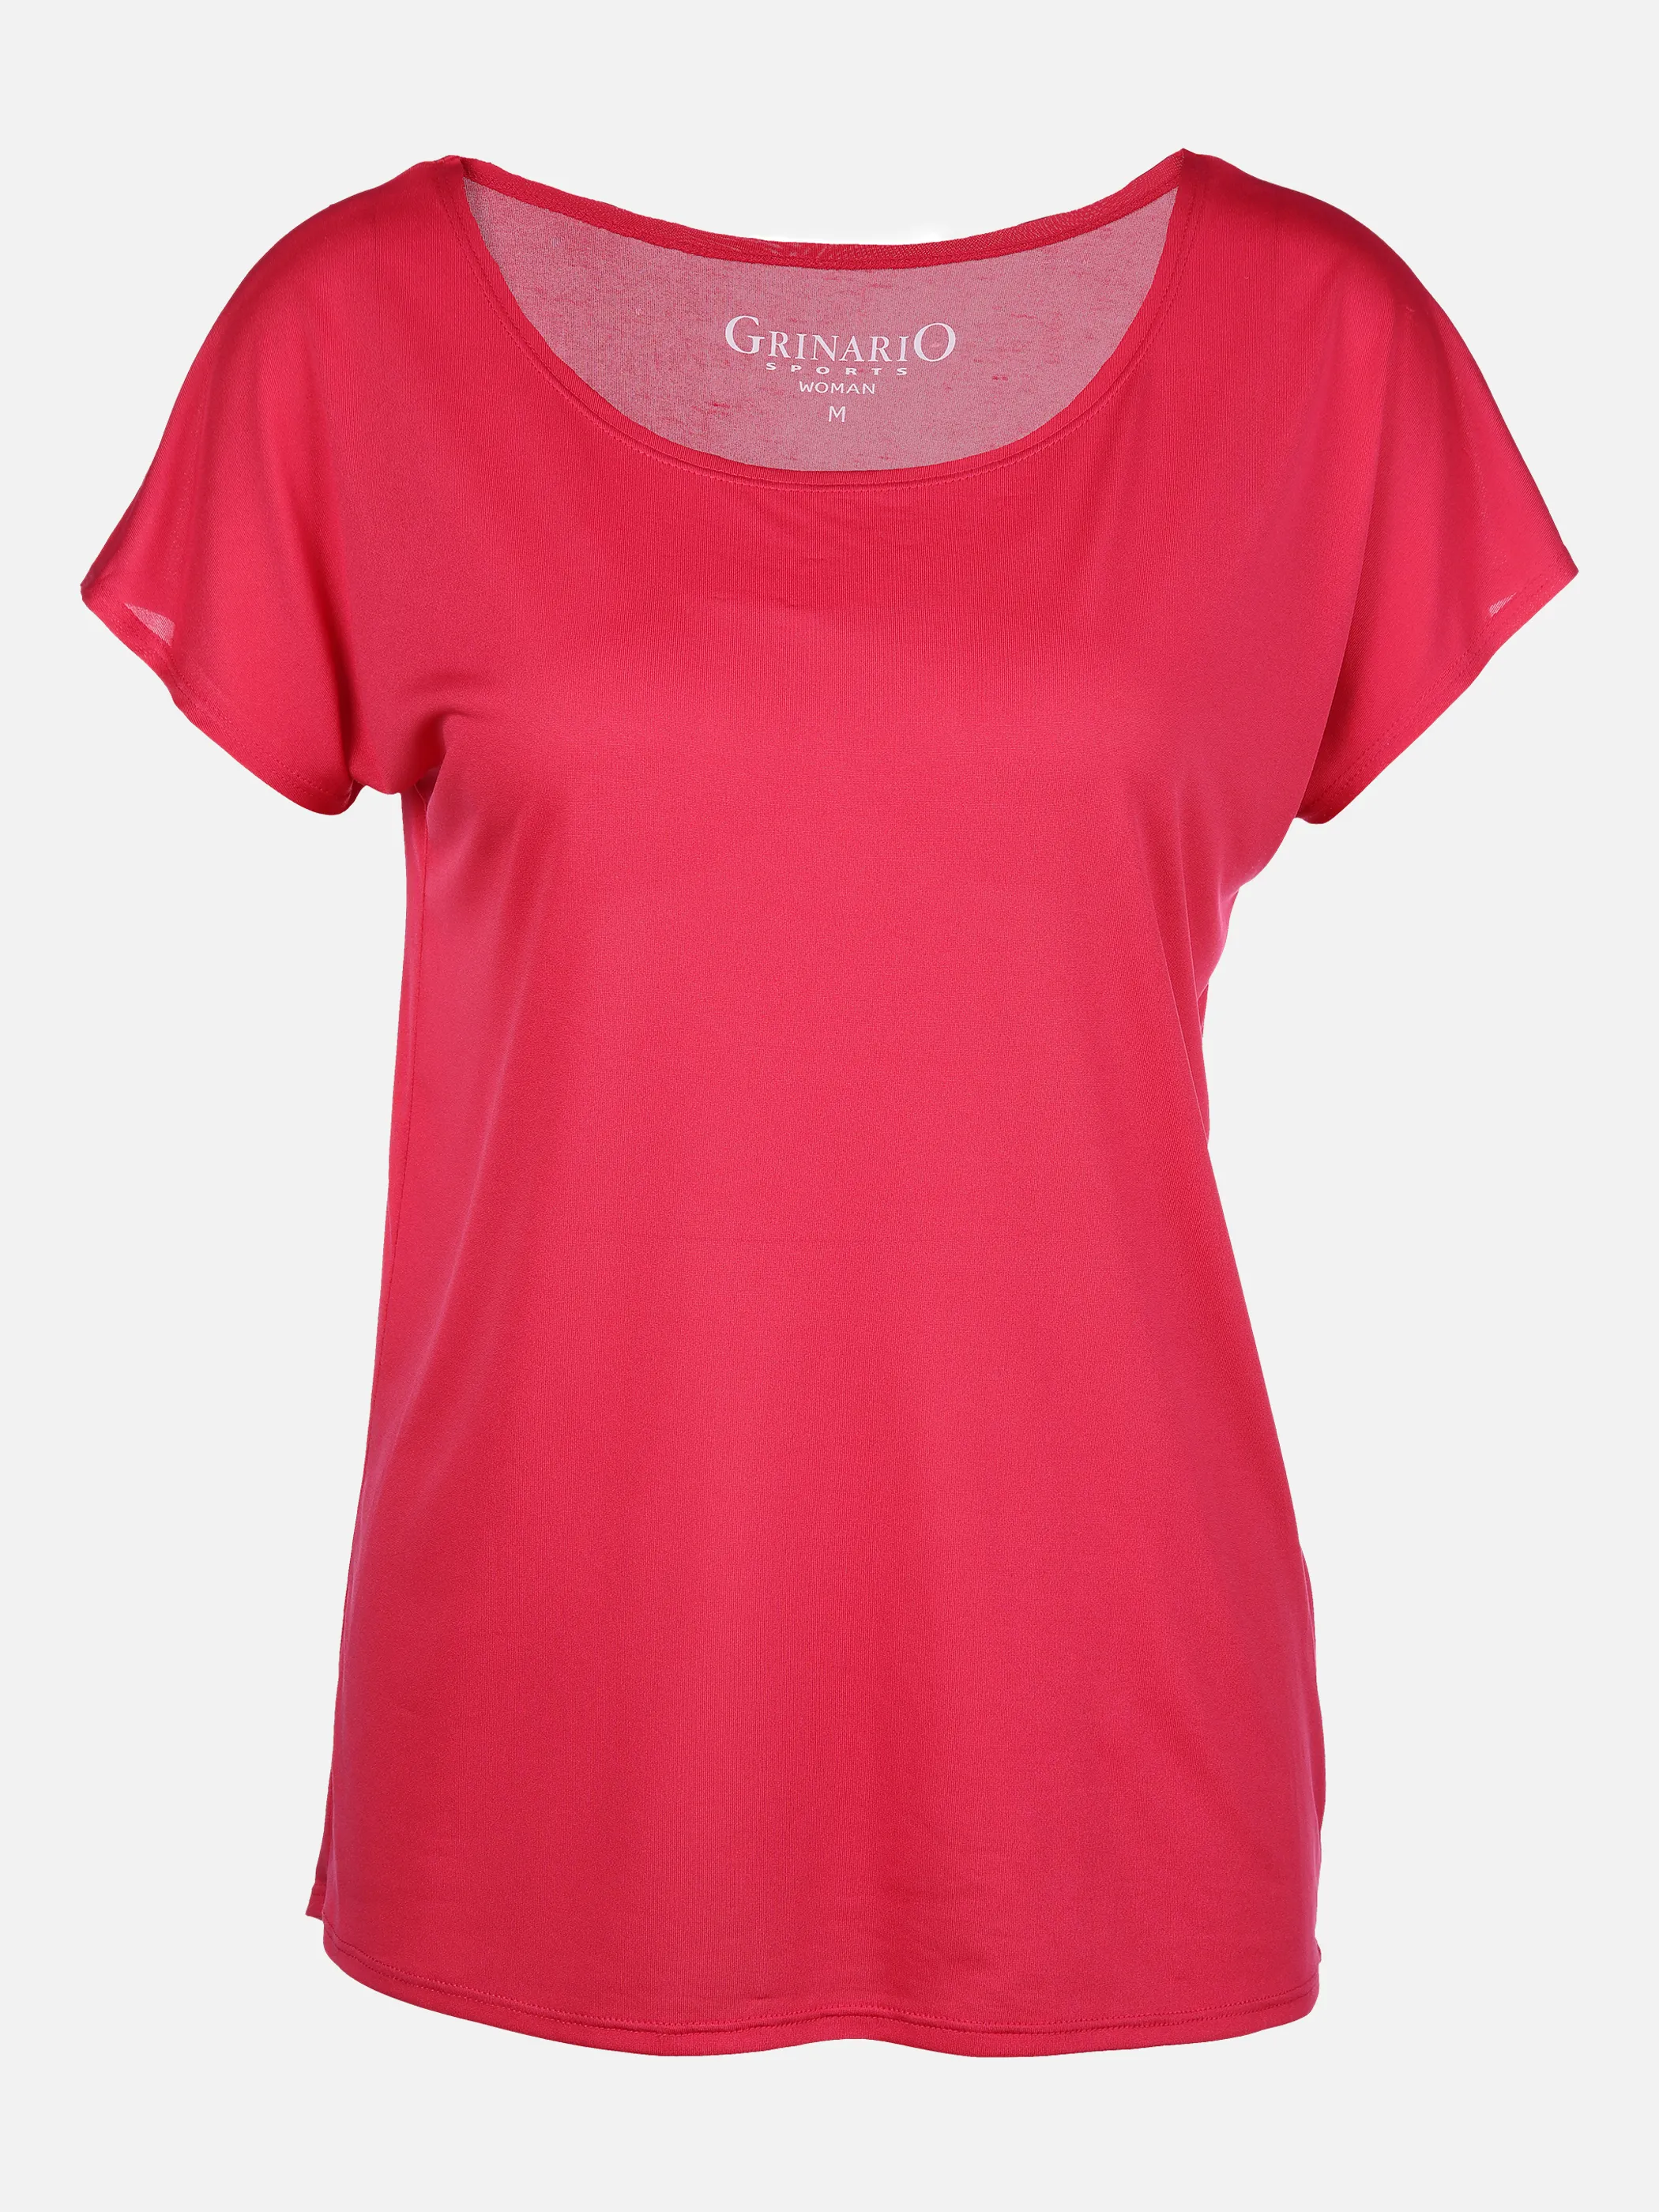 Grinario Sports Da-Sport-T-Shirt, Rundhals Pink 861368 PINK 1